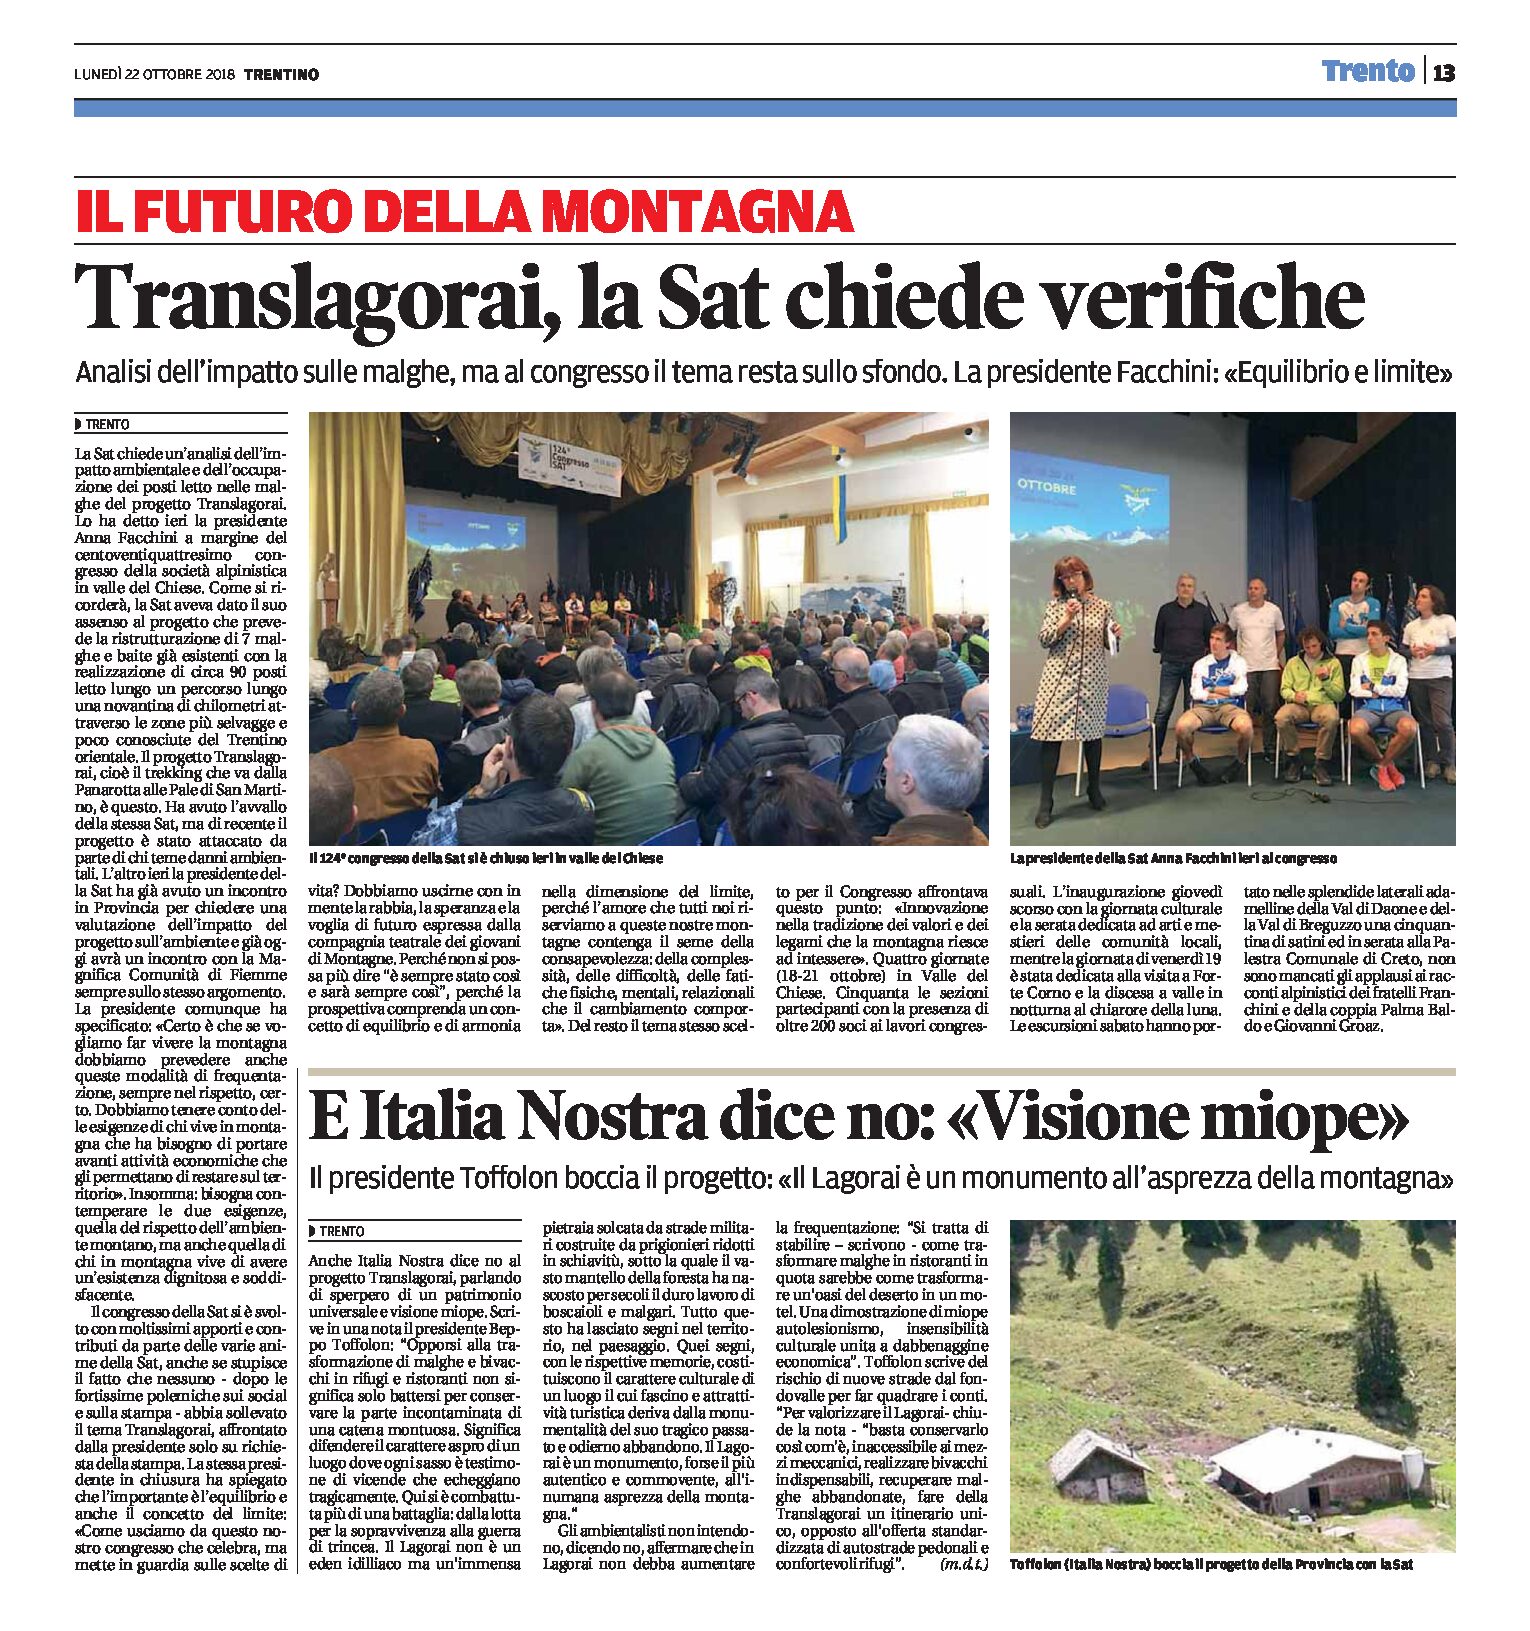 Translagorai: Italia Nostra dice no “visione miope”. La Sat chiede verifiche